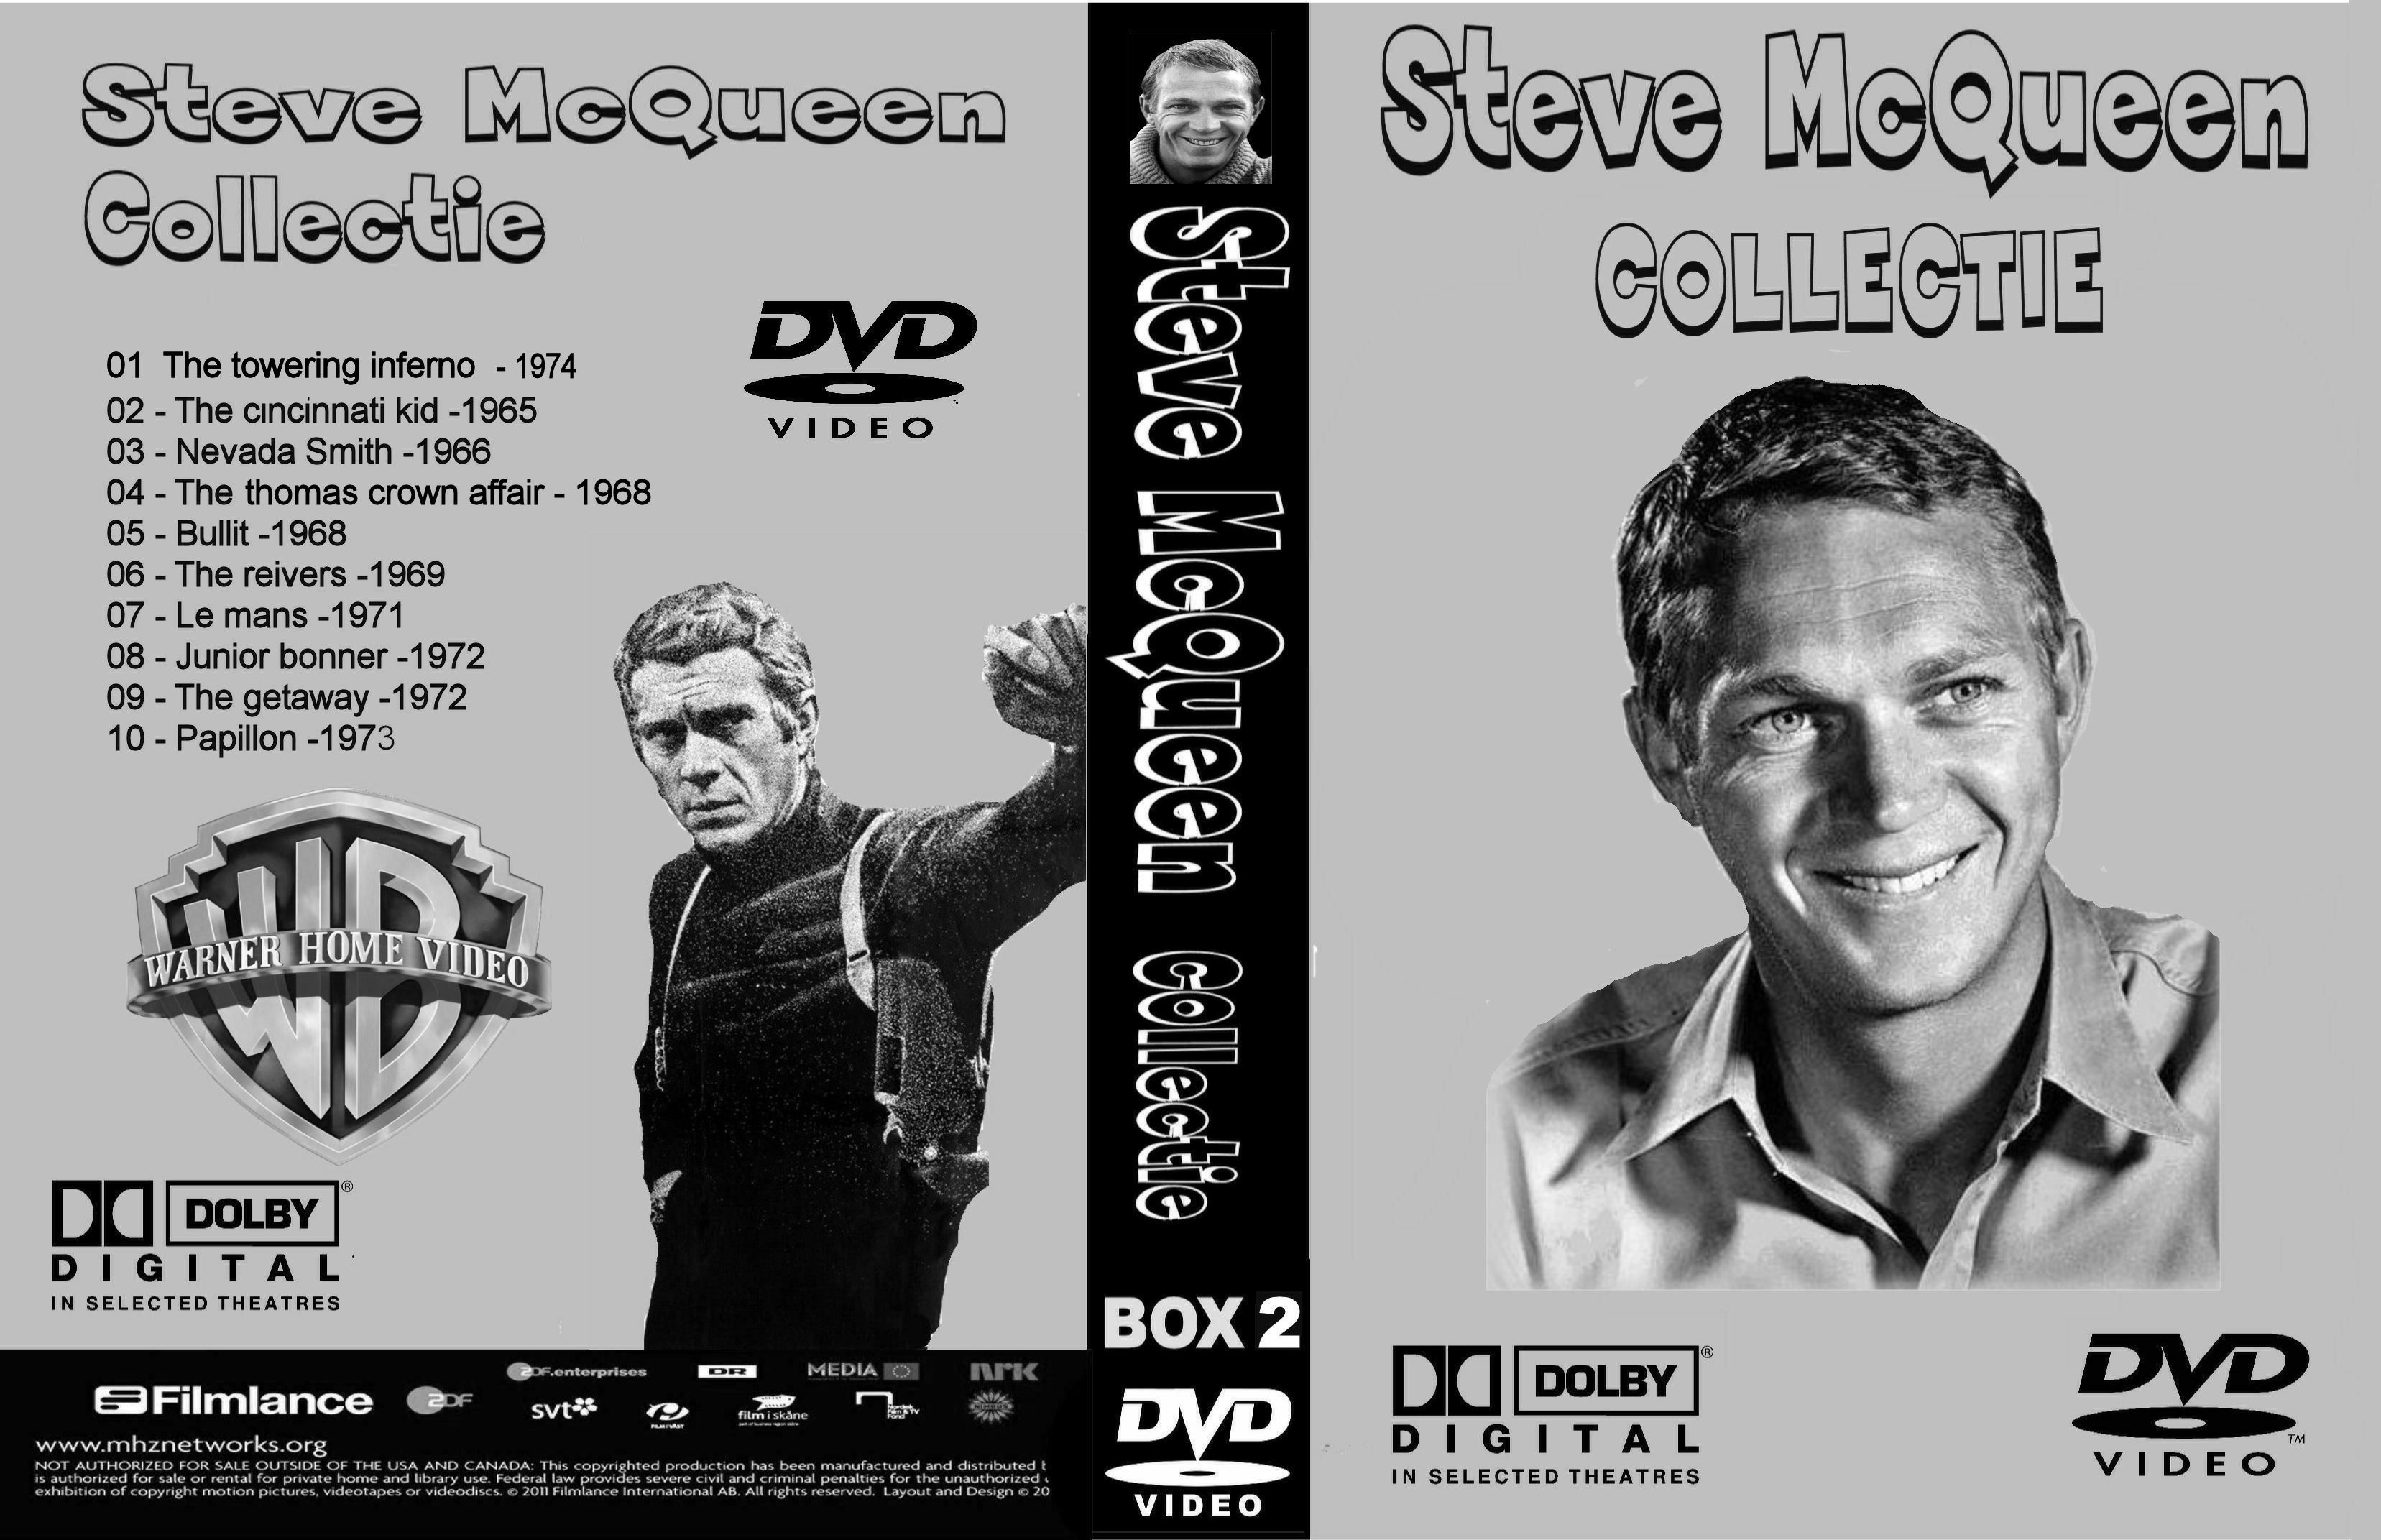 Steve McQueen Collectiie Box 2 DvD 3 van 10